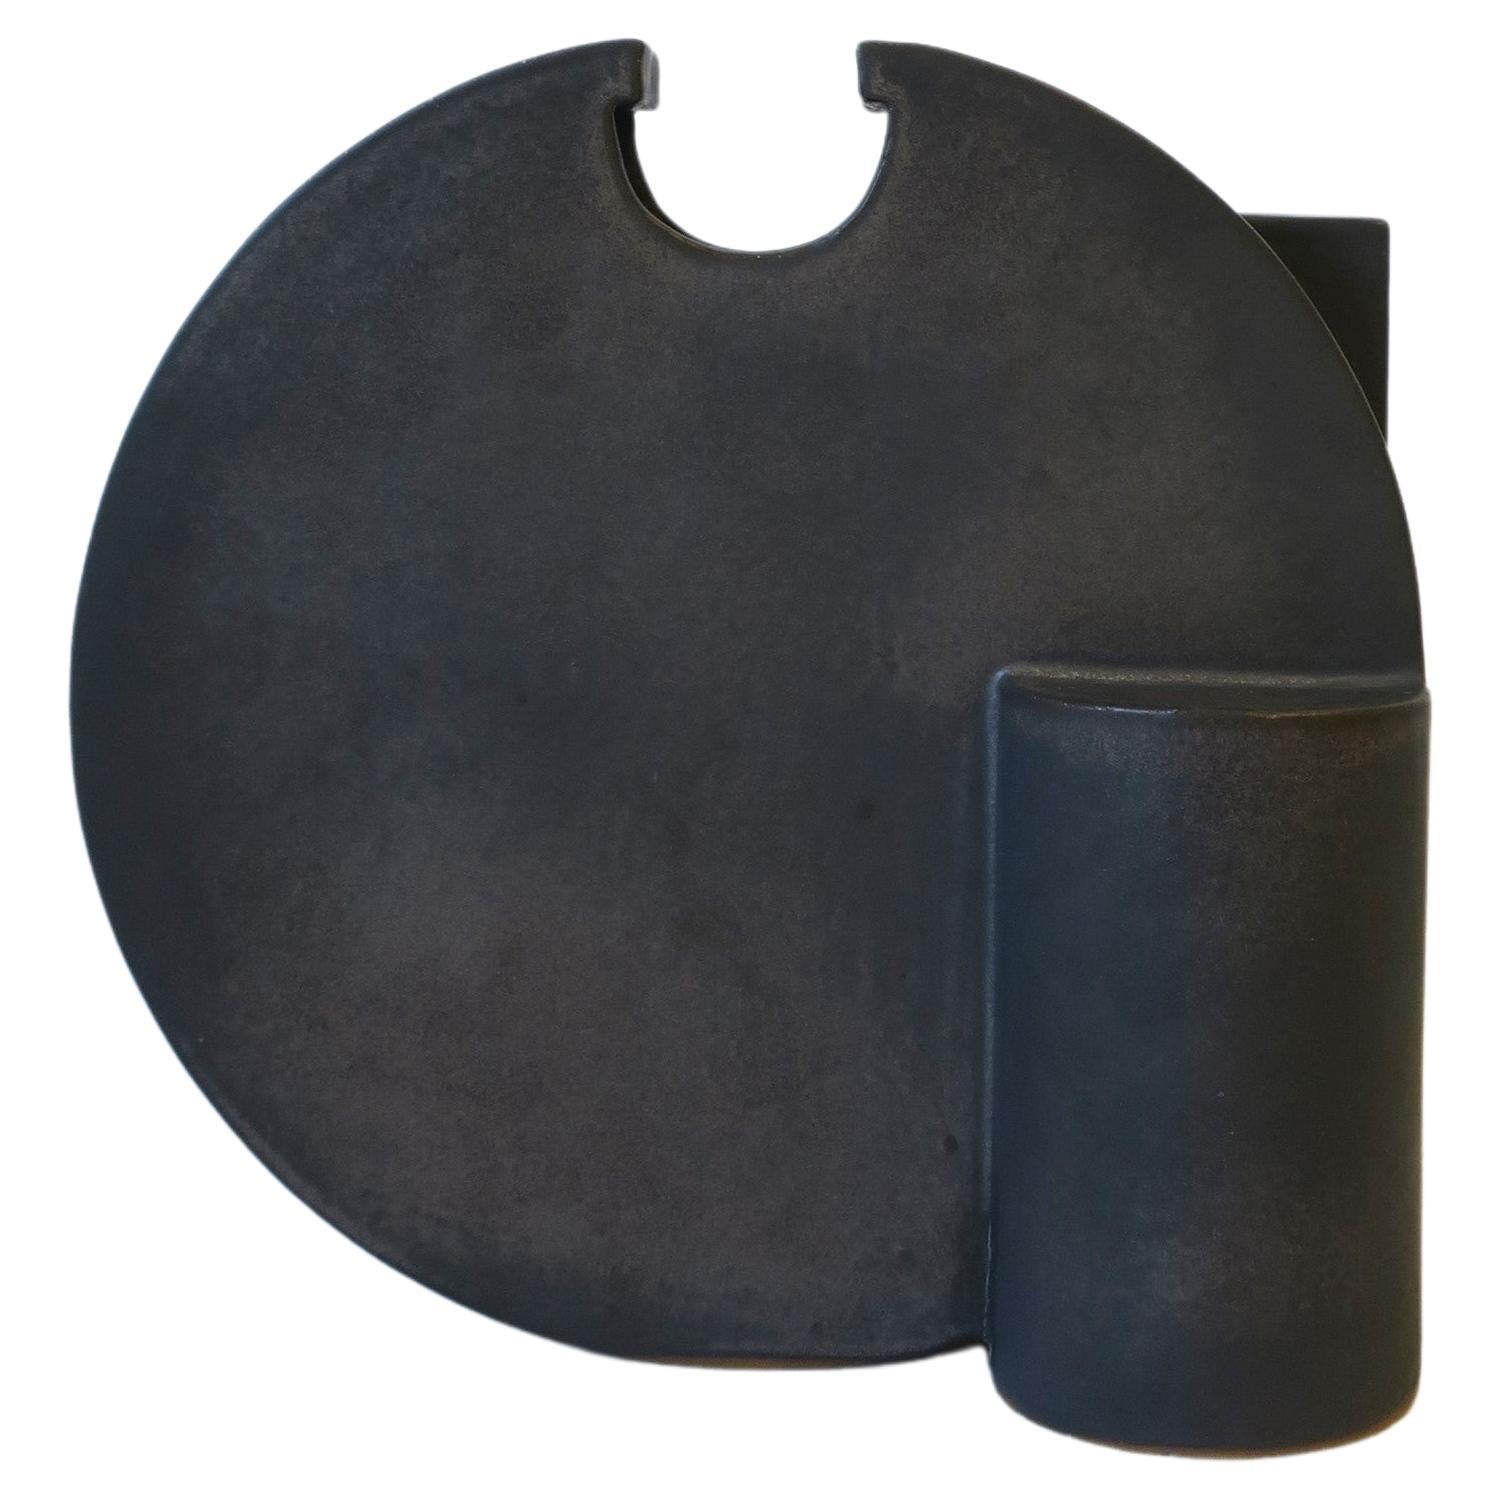 Black Charcoal Grey Sculpture Vase, Large For Sale